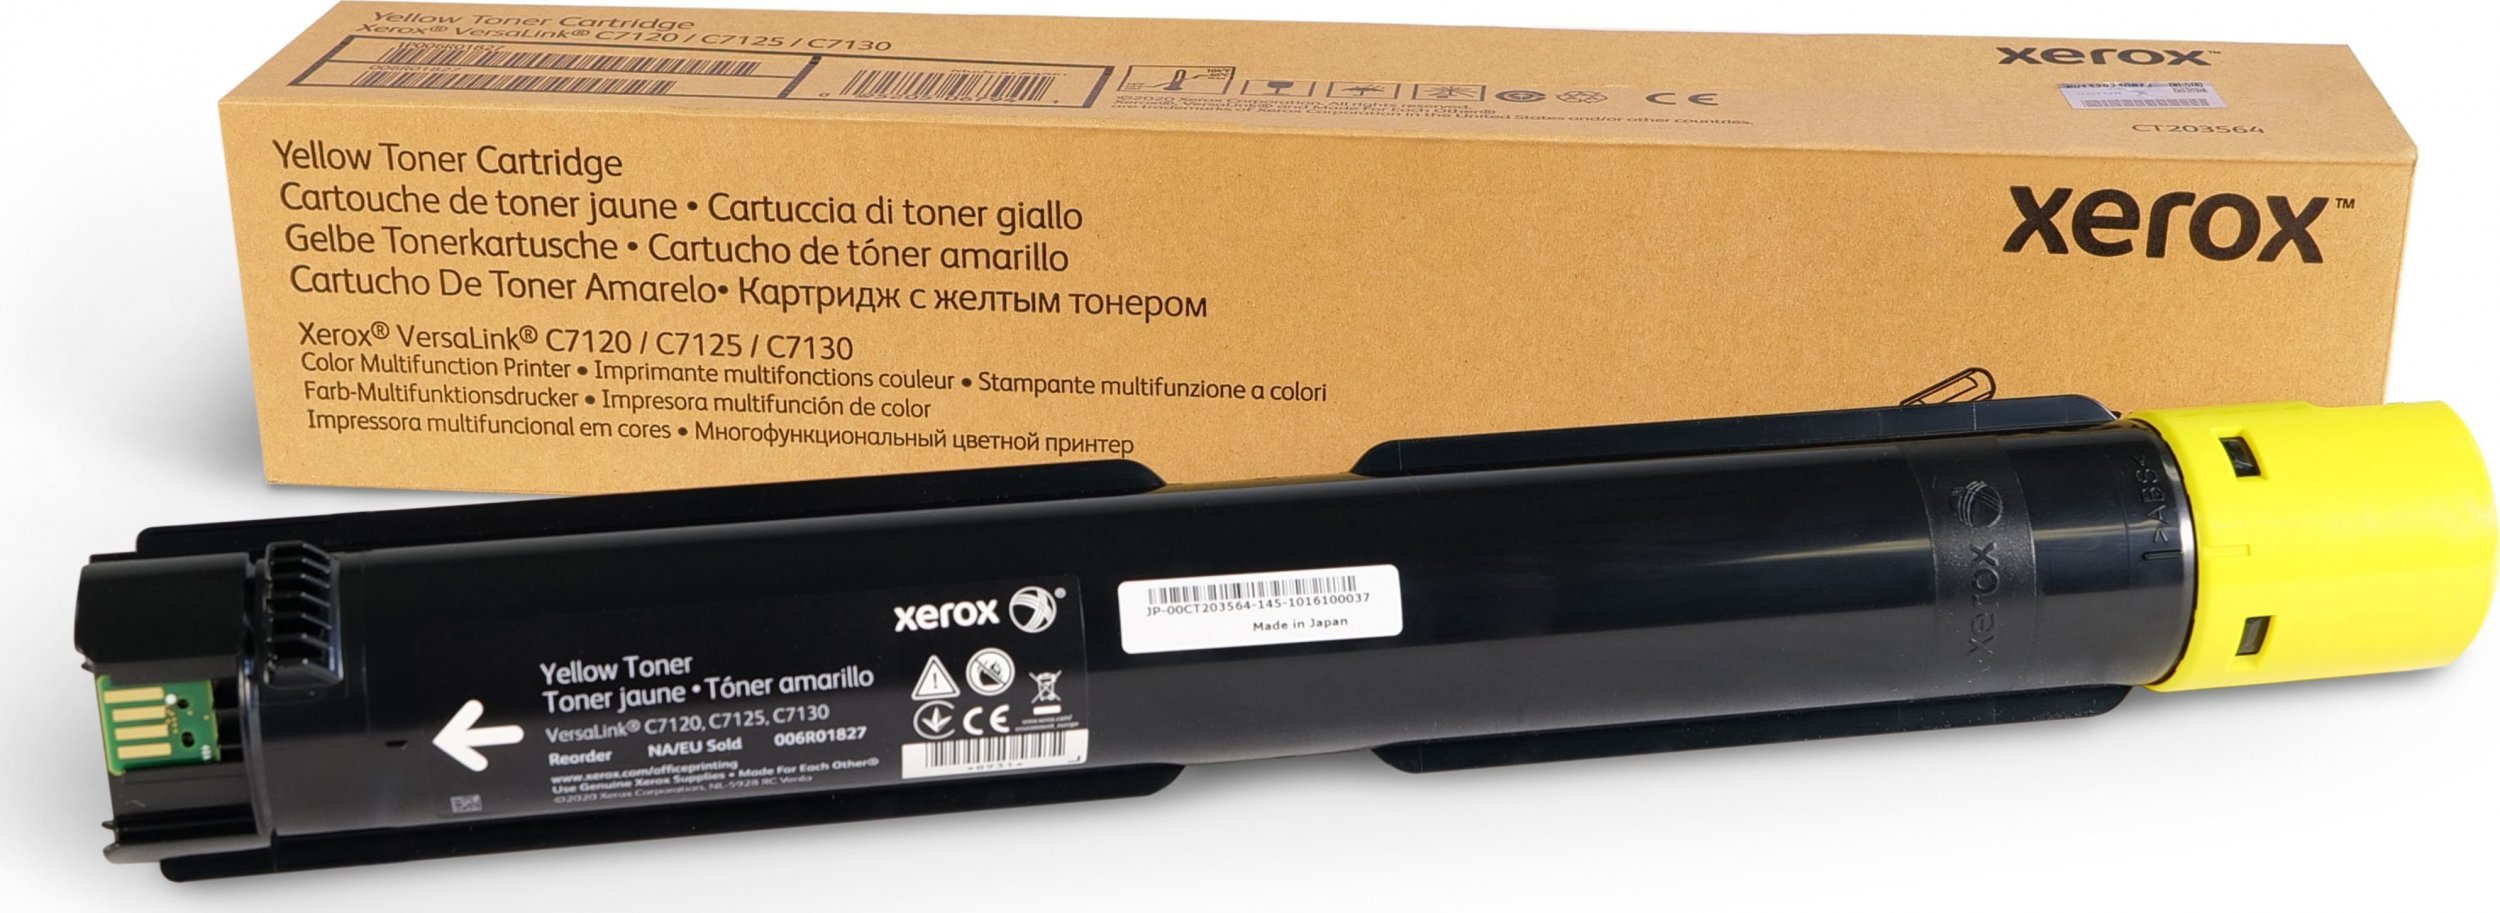 Toner Xerox Xerox - Gelb - original - Tonerpatrone - fur VersaLink C7000, C7120, C7125, C7130